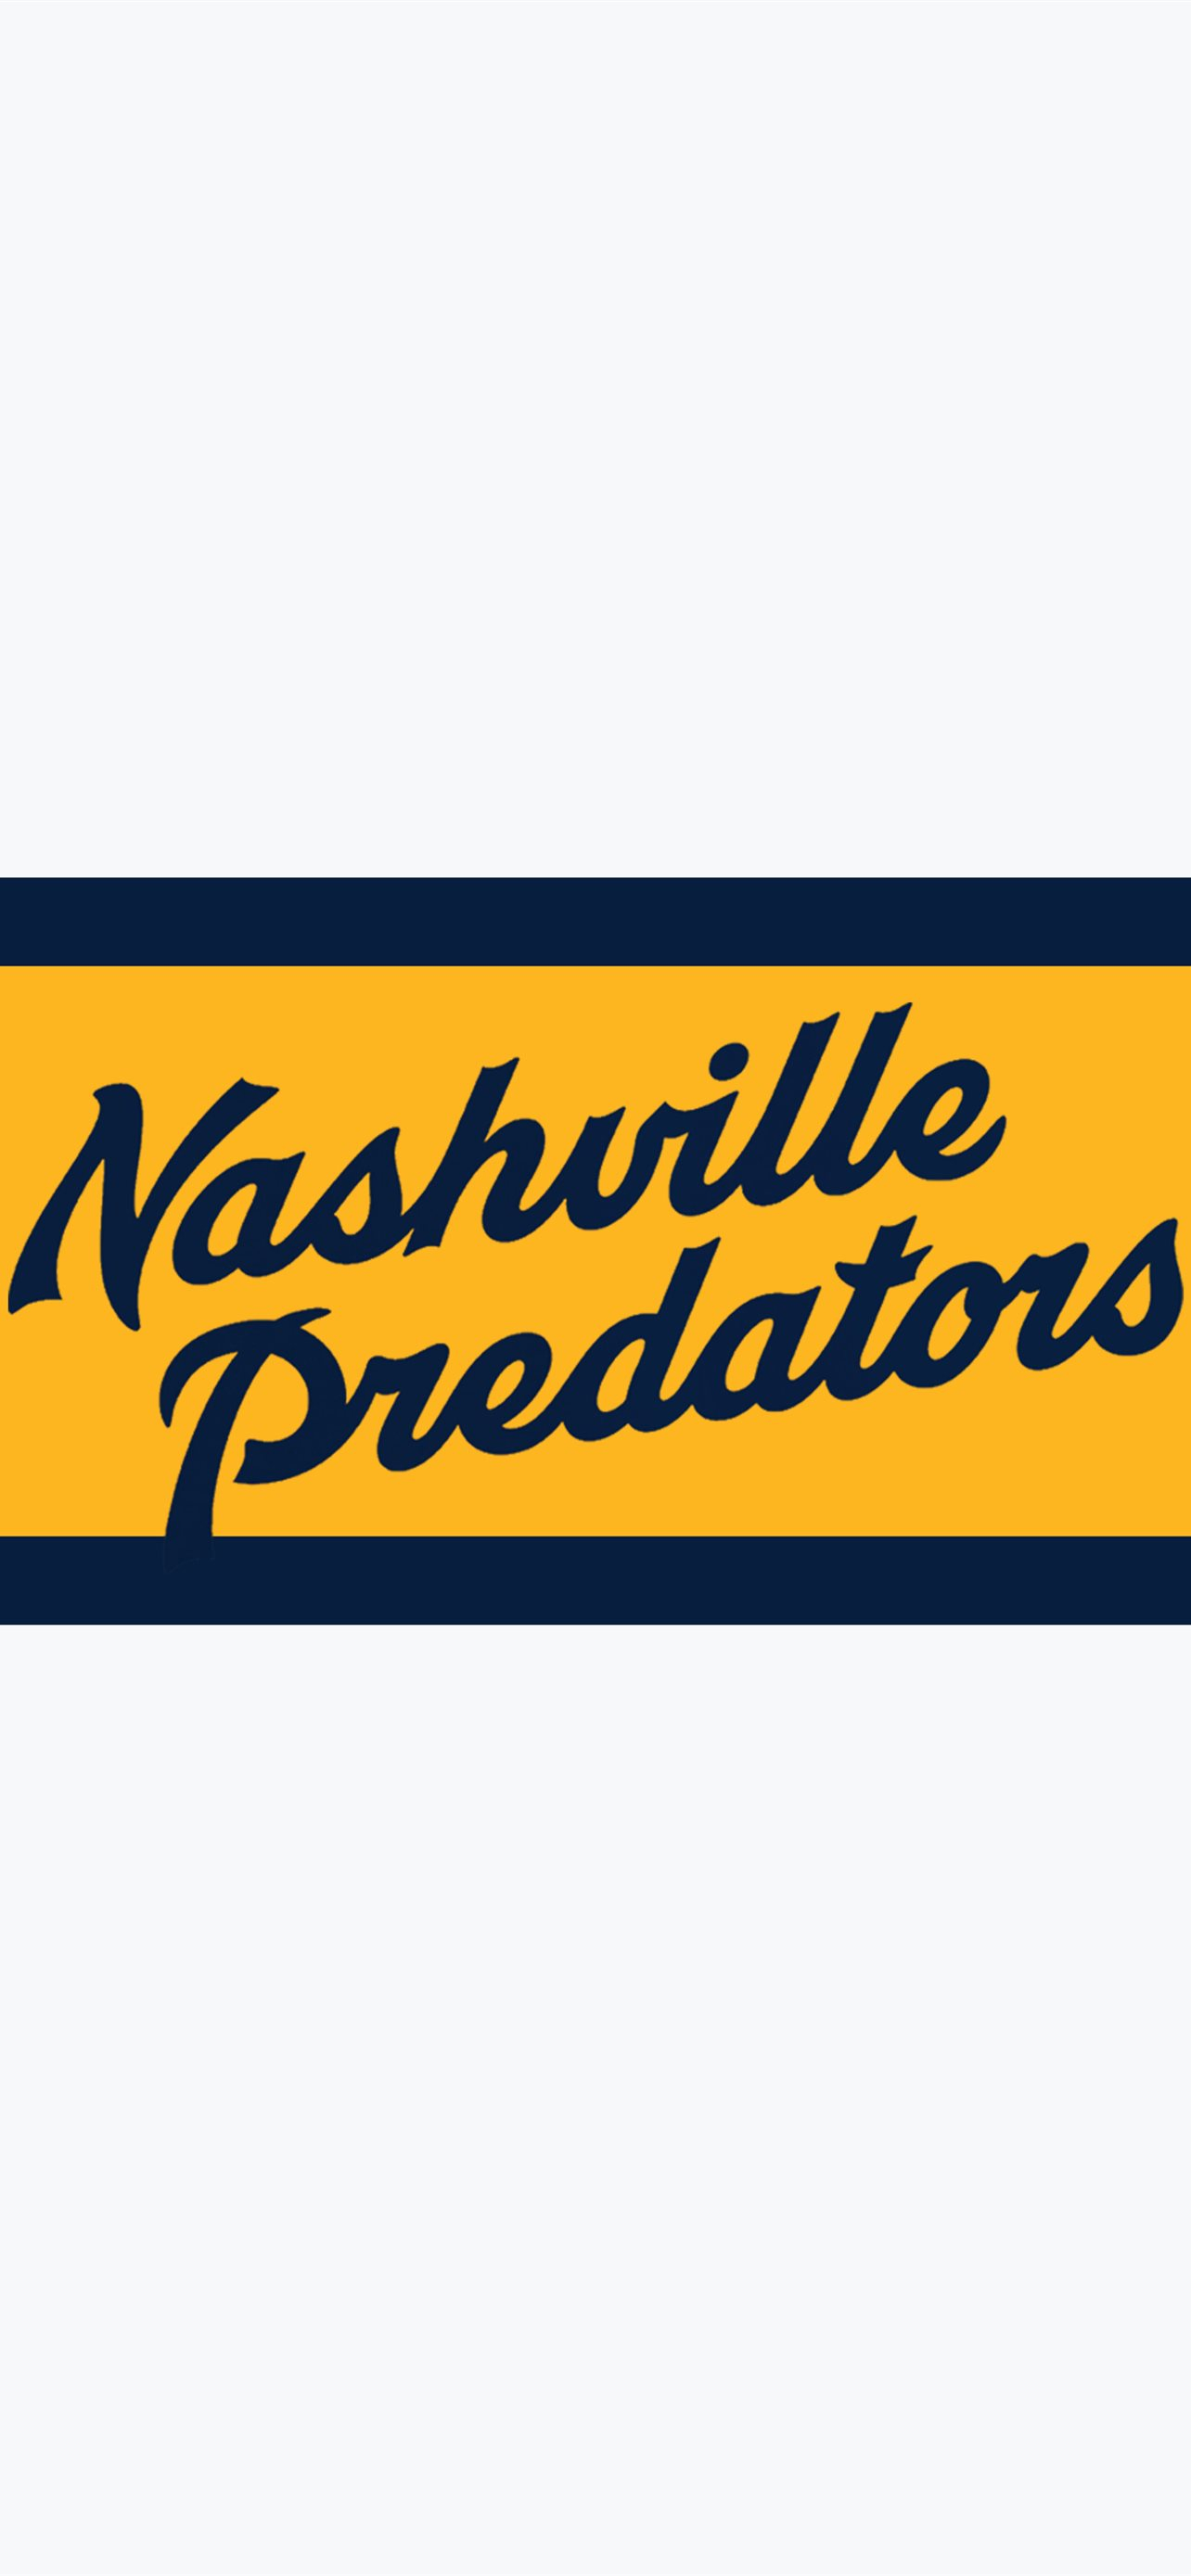 1284x2778 Best Nashville predators iPhone HD Wallpapers